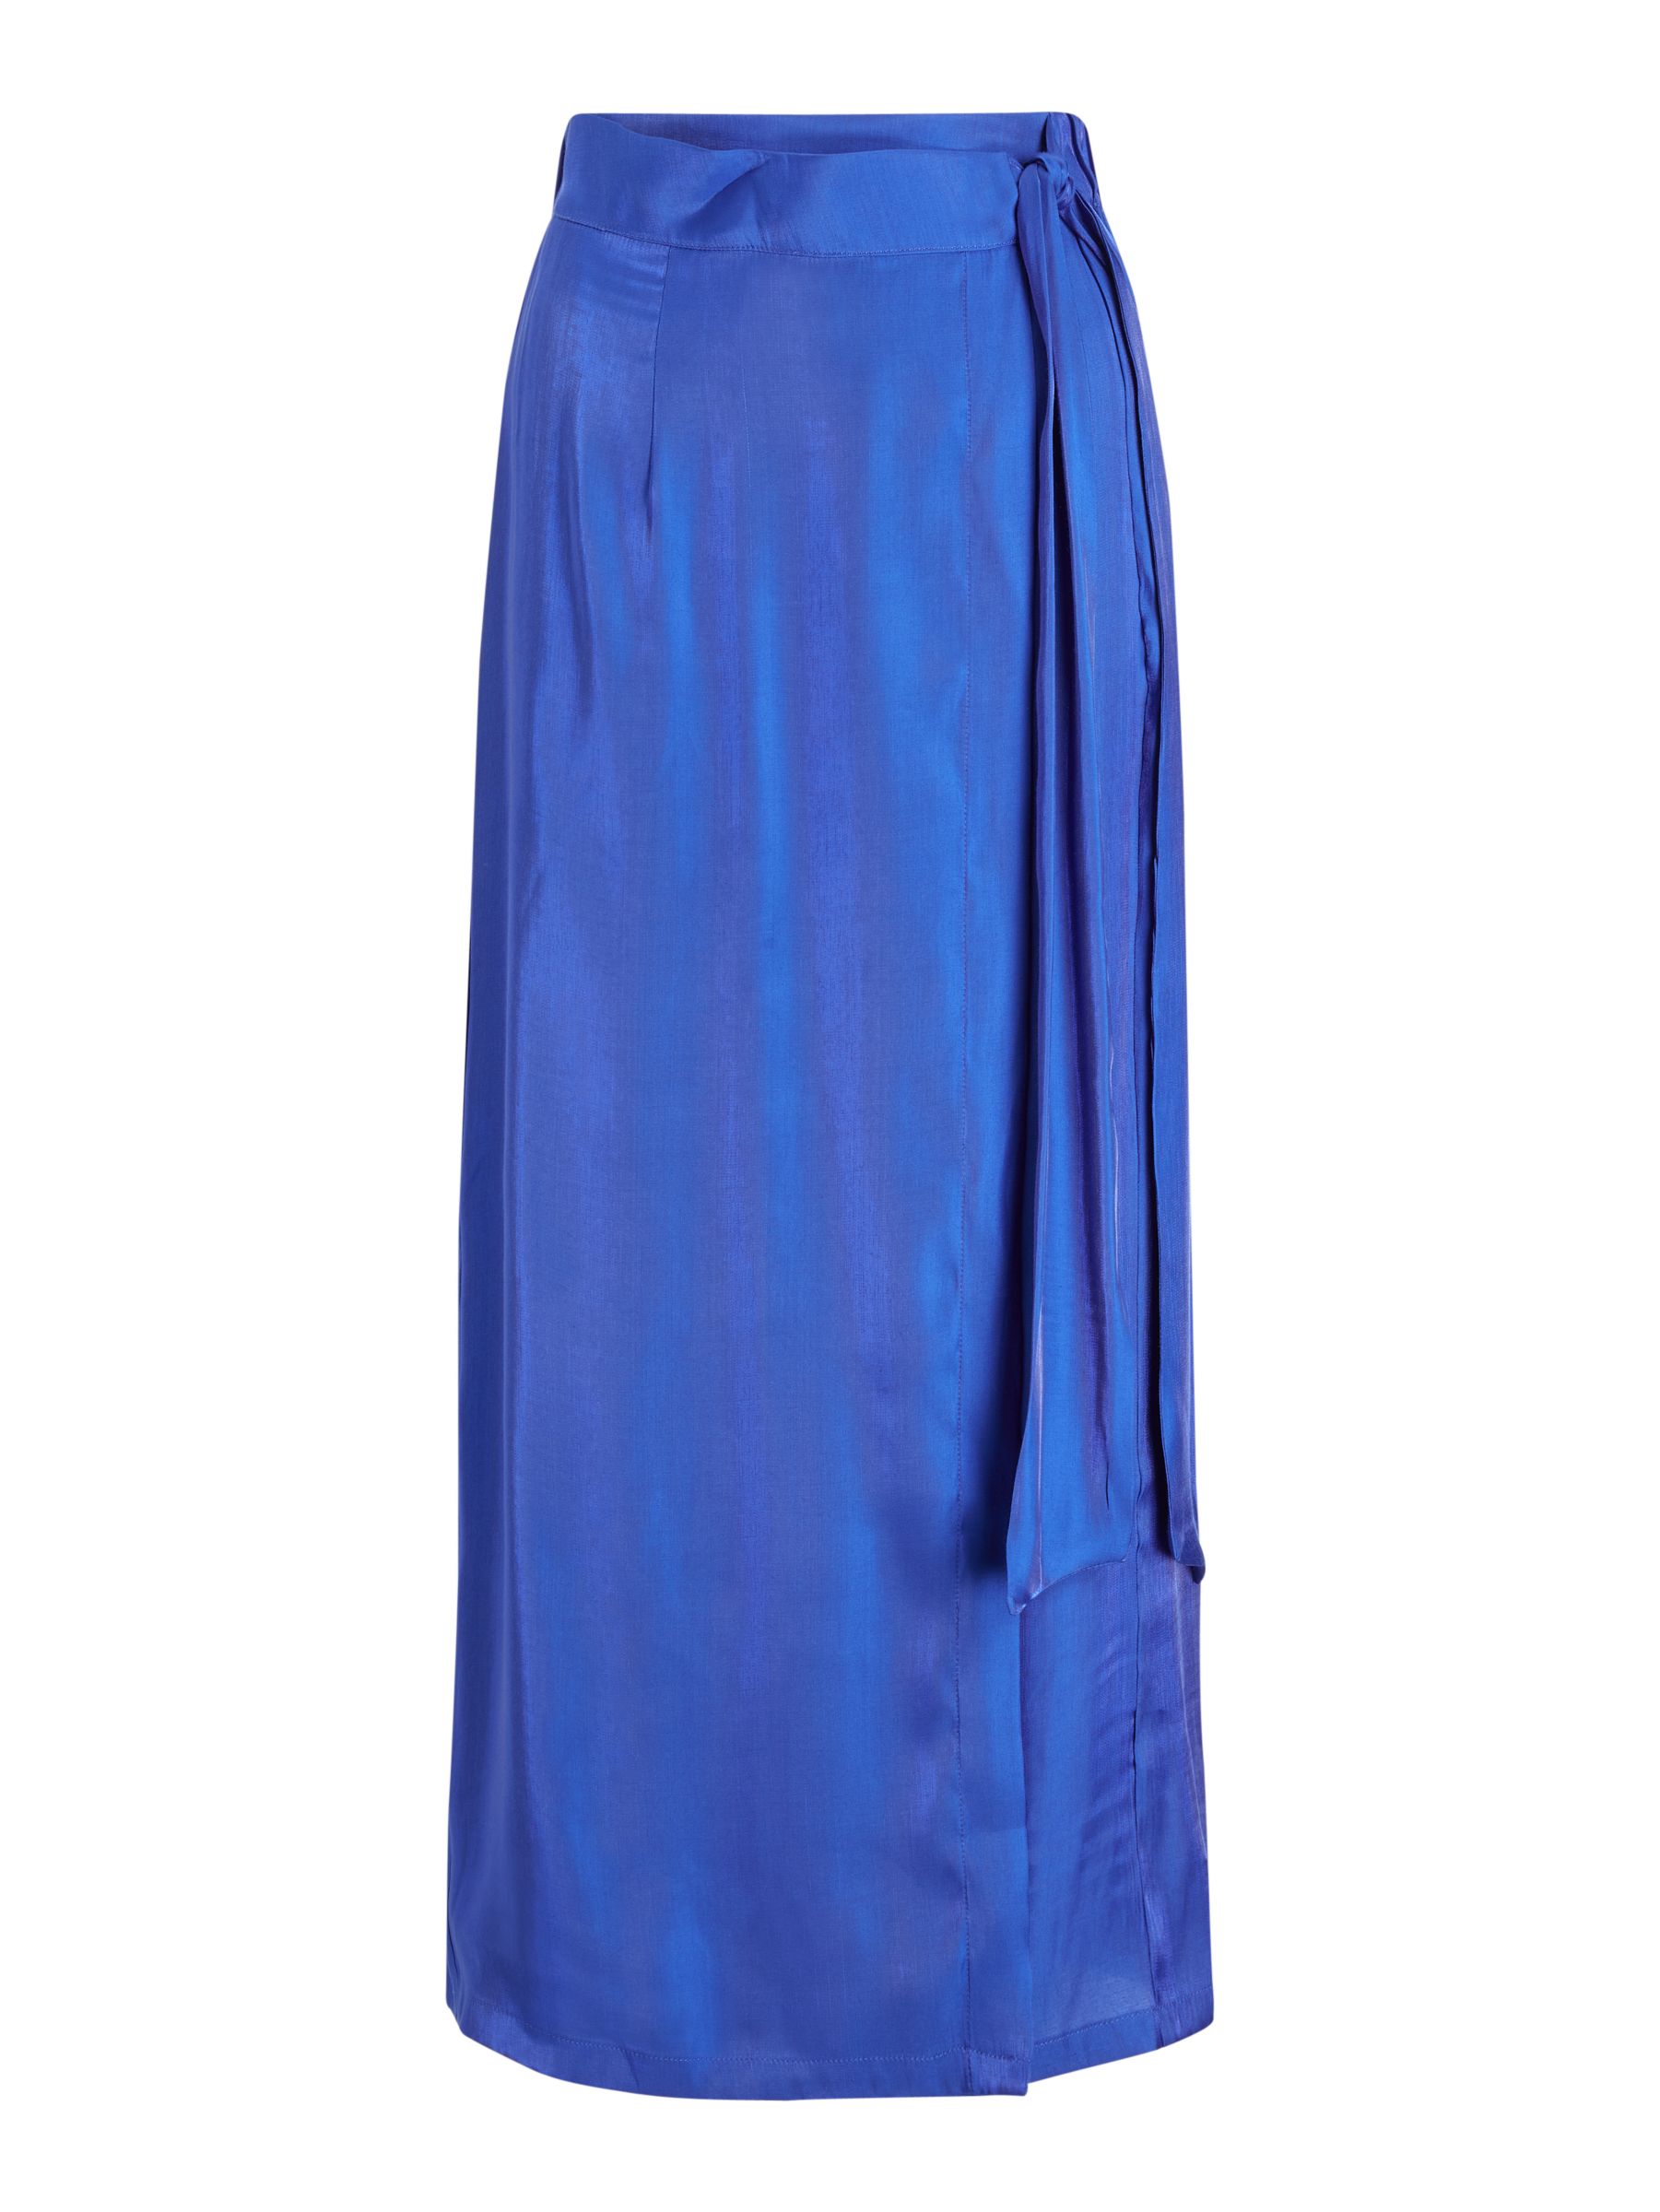 Y.A.S Kima High Waisted Midi Skirt, Blue